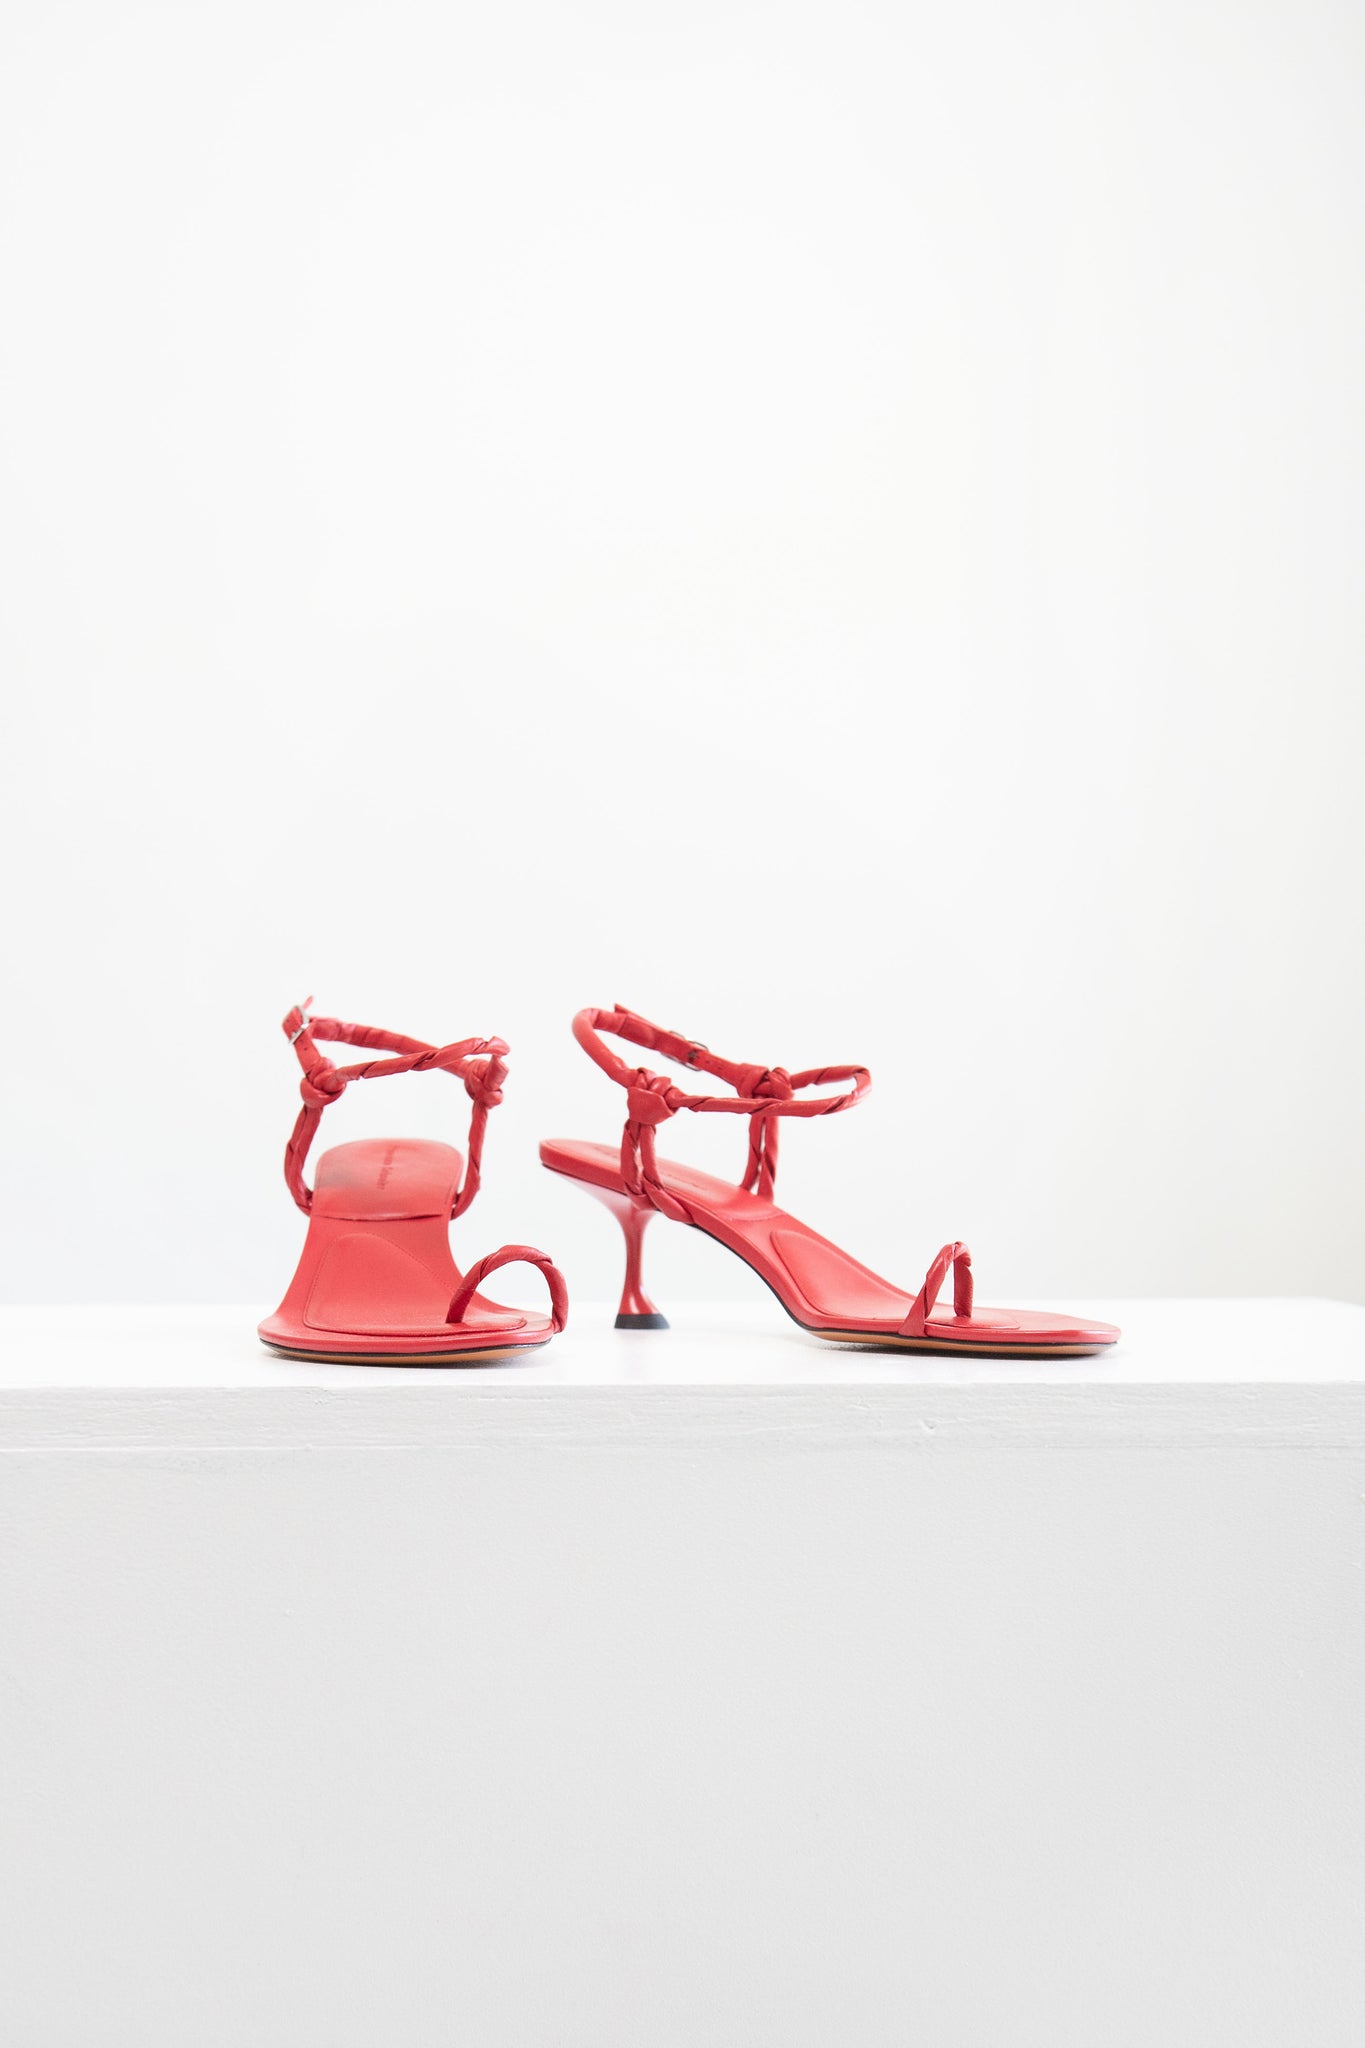 proenza schouler - Tee Toe Ring Sandals, Red